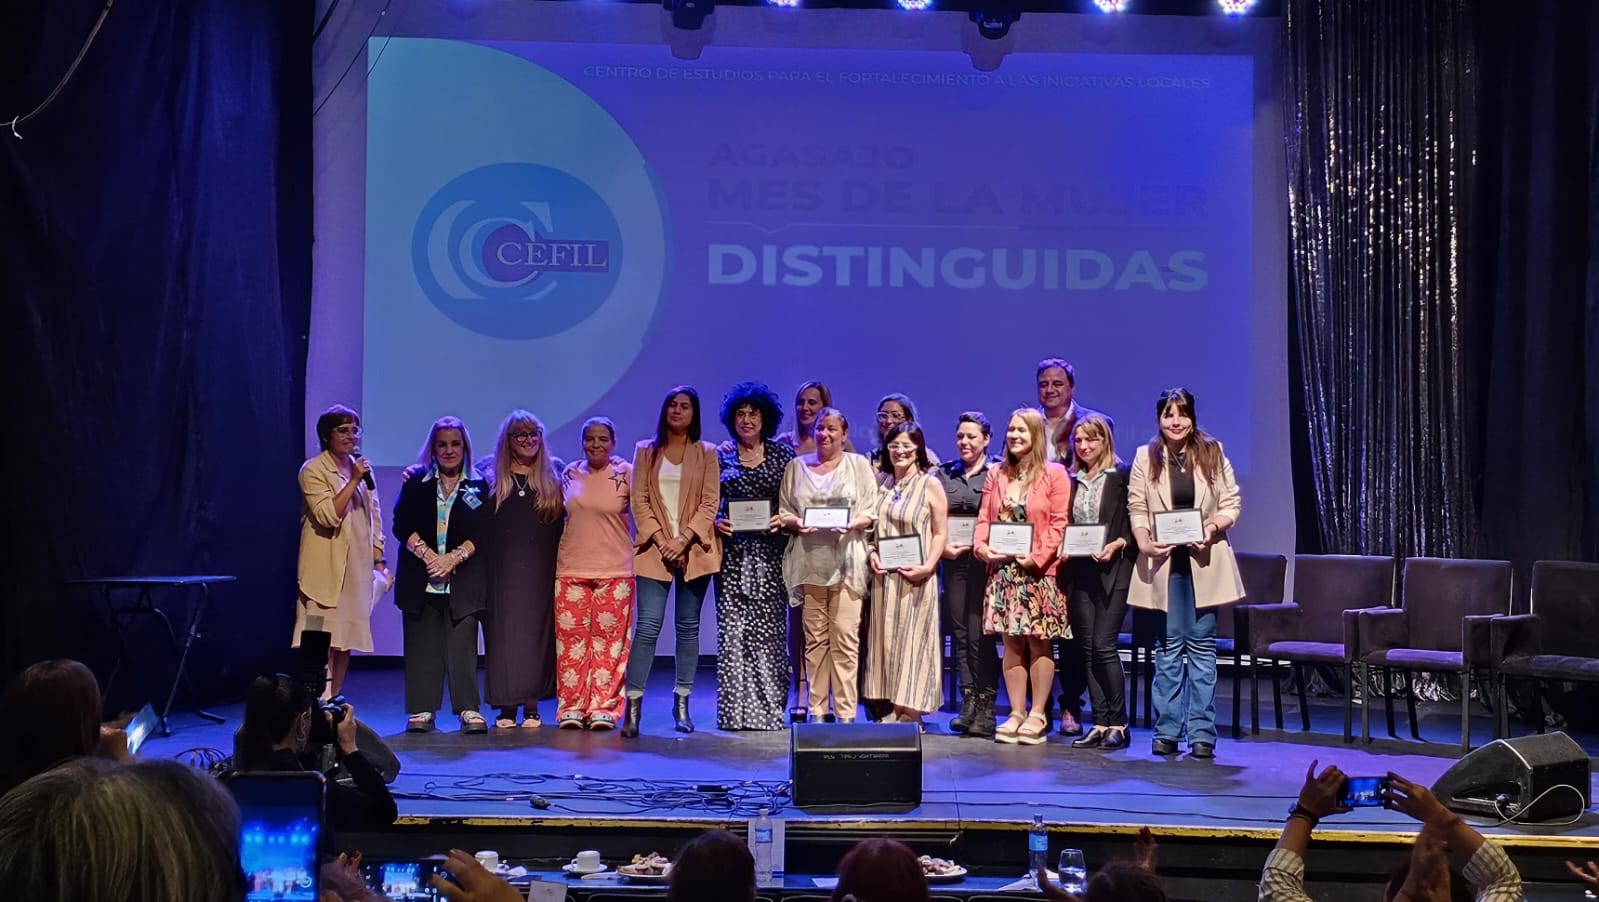 Mujeres destacadas de Mar del Plata recibieron distinciones en el evento anual de CEFIL